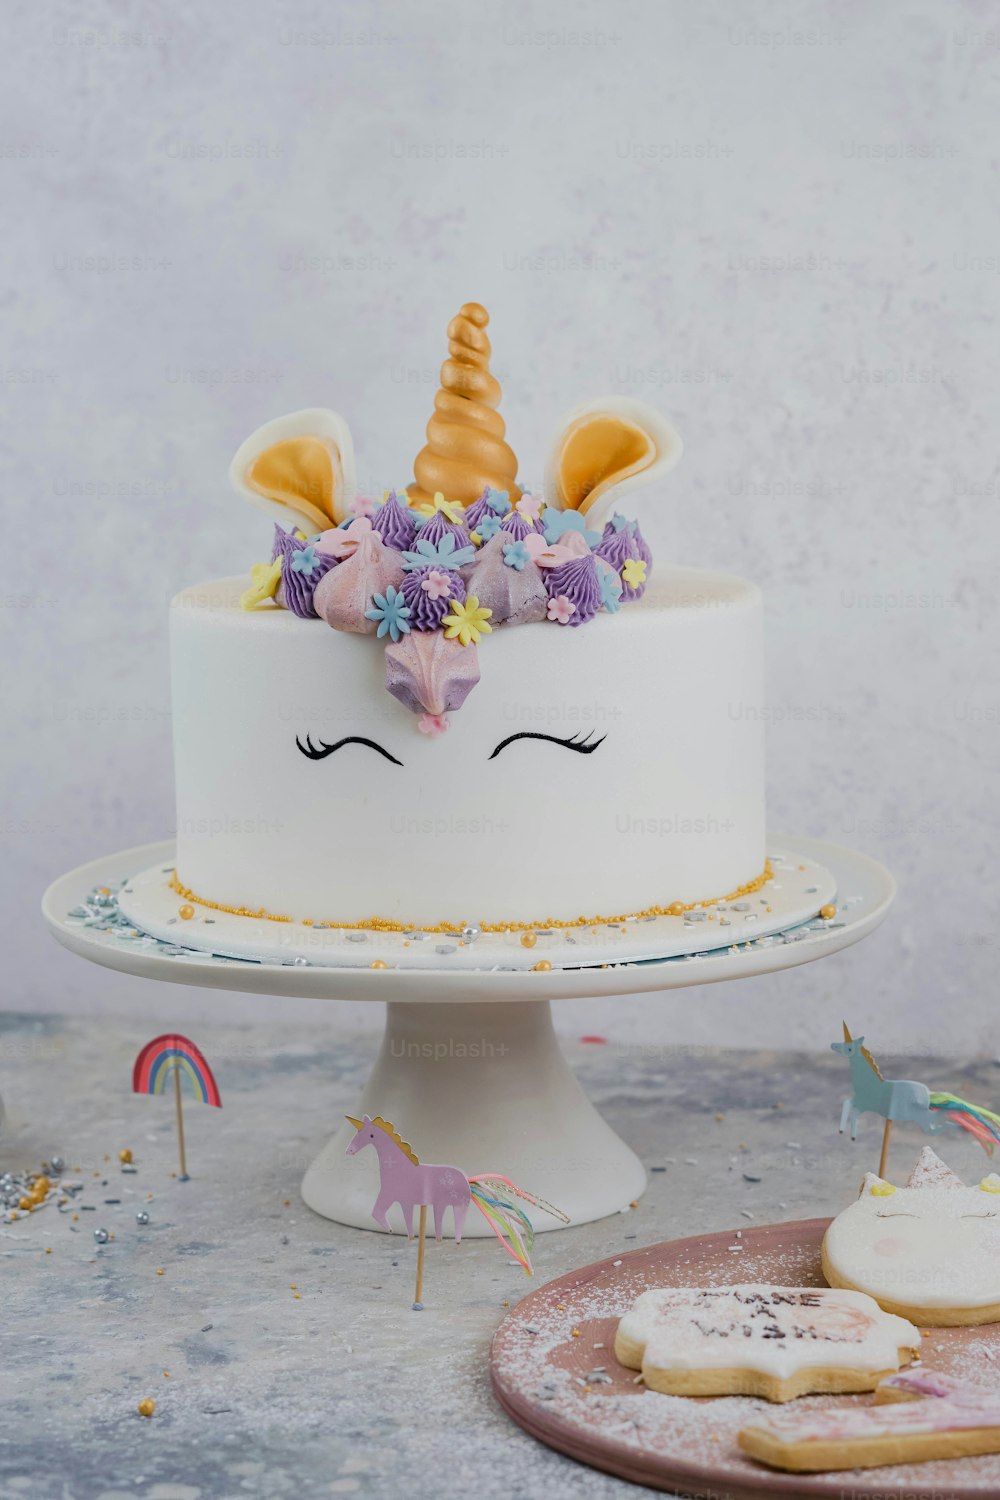 Un pastel blanco con una cara de unicornio encima.